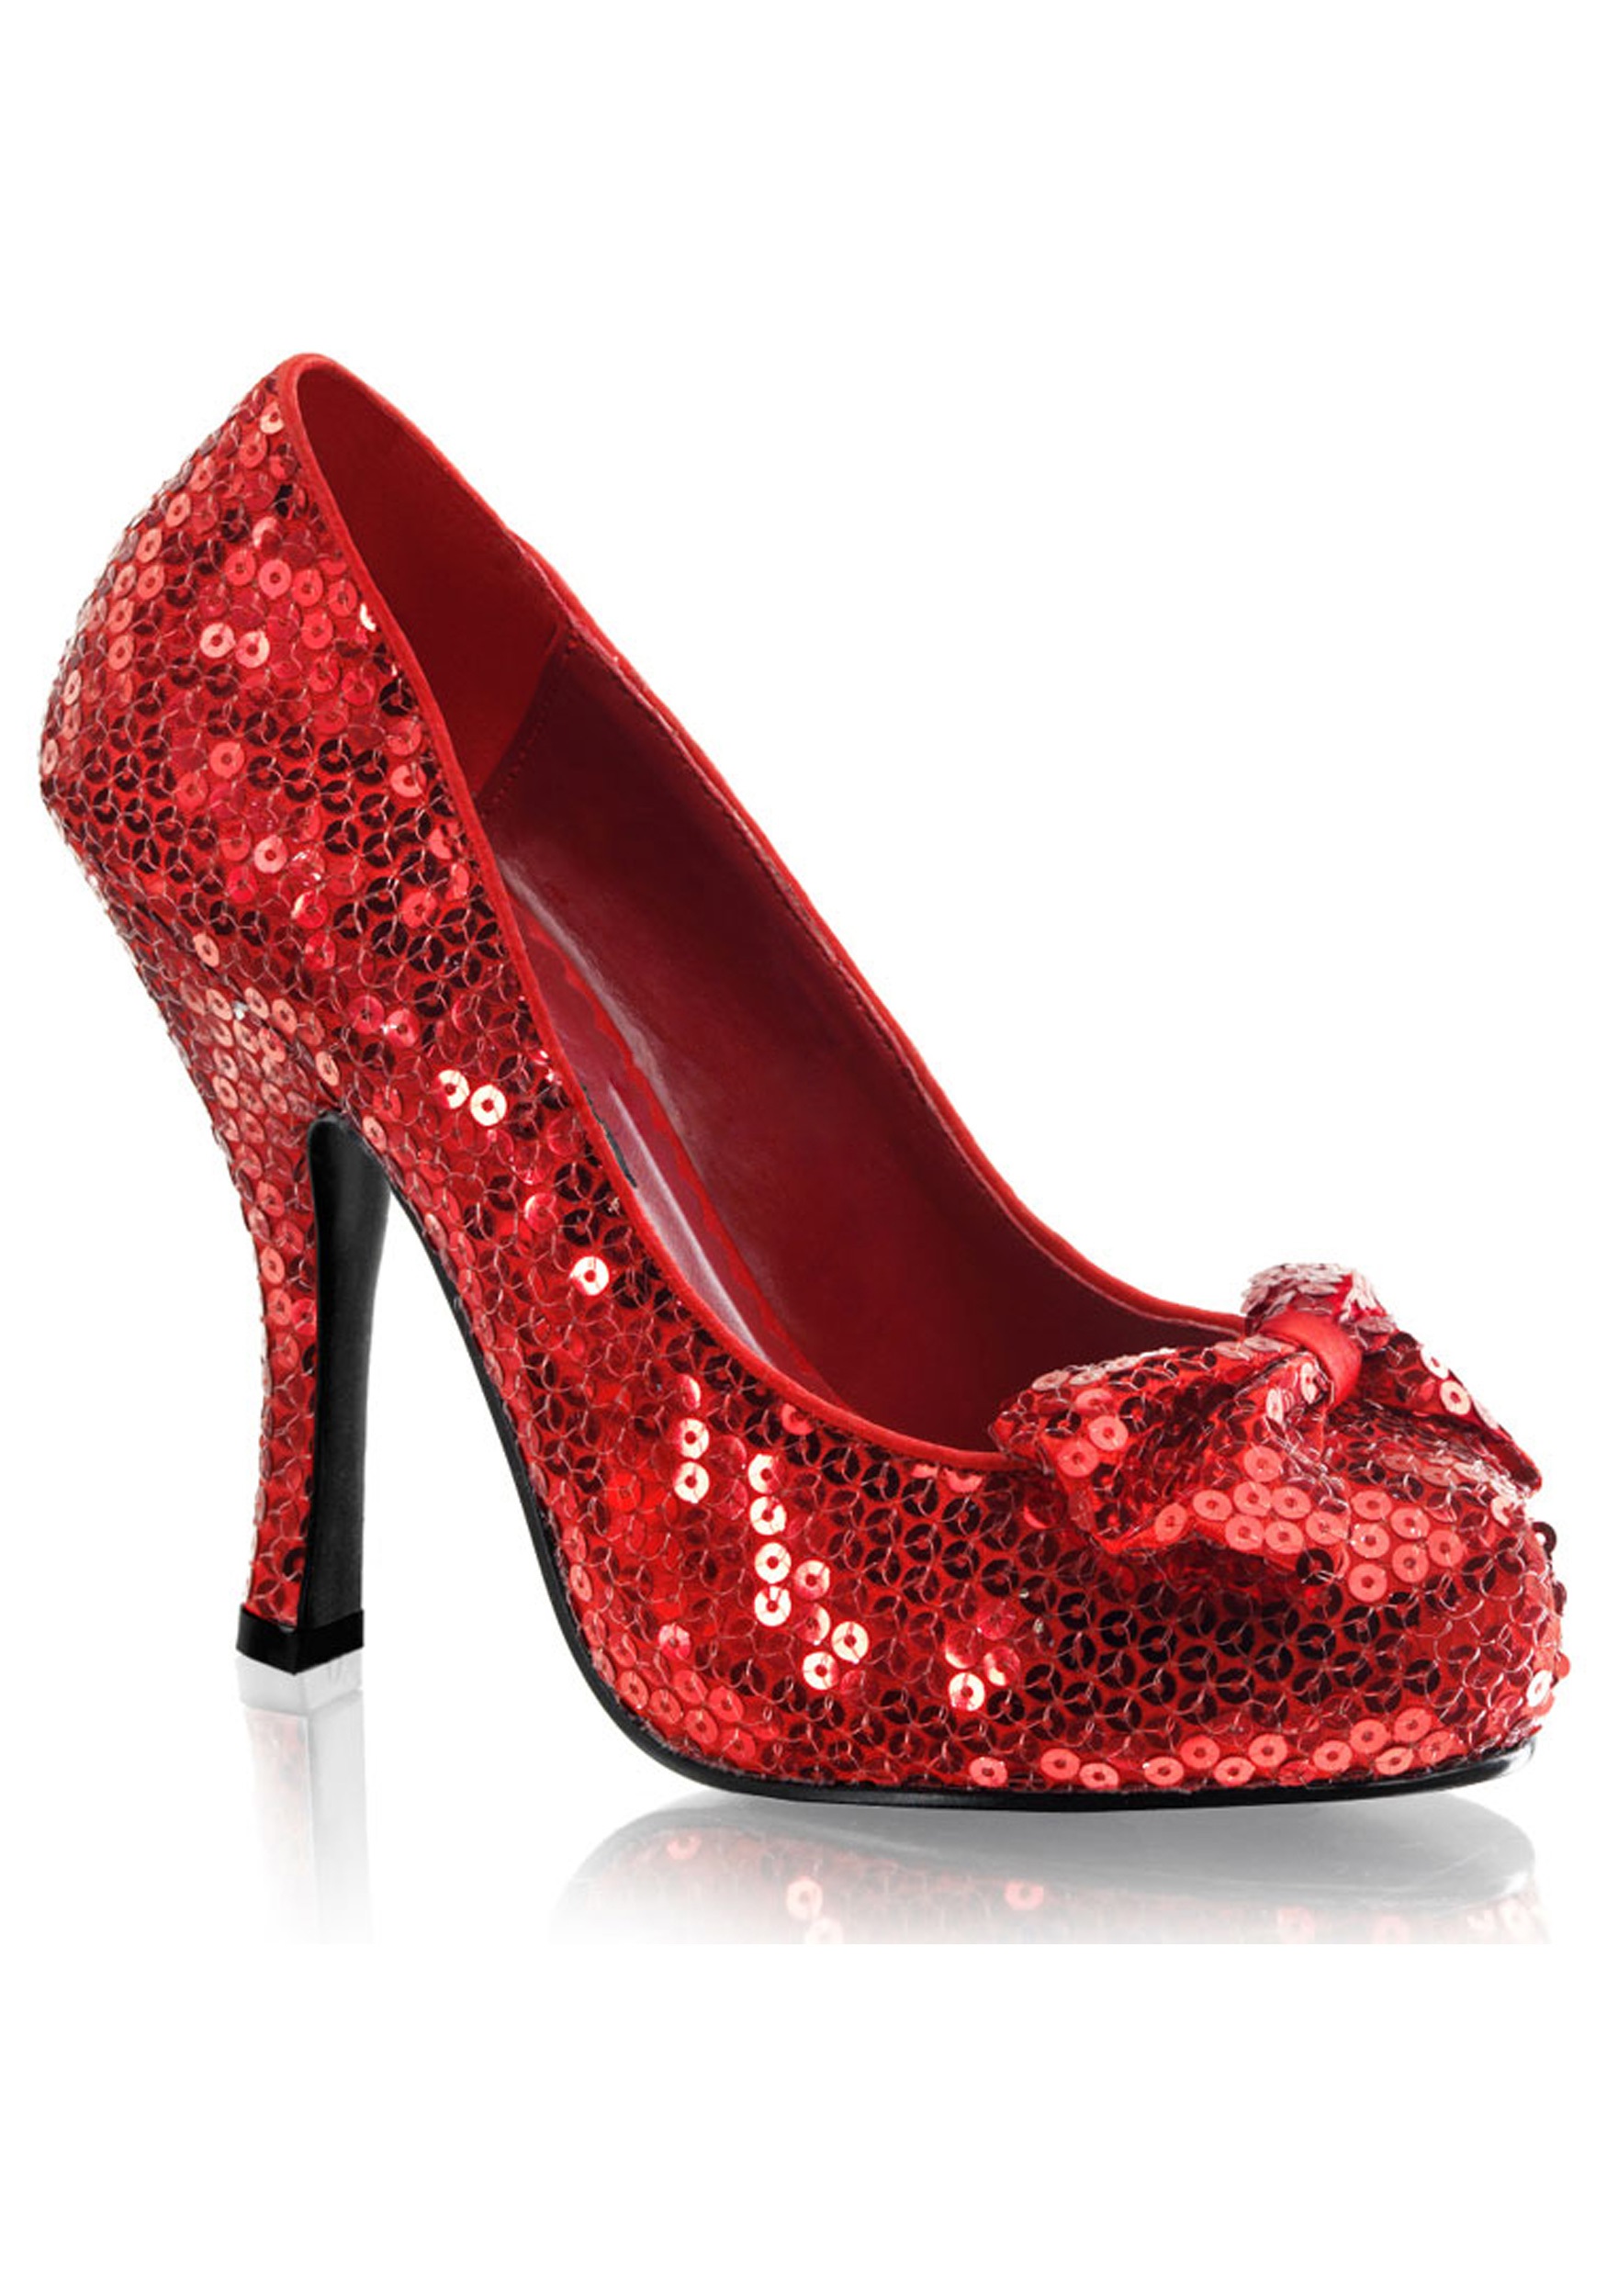 Womens Red Sequin High Heels